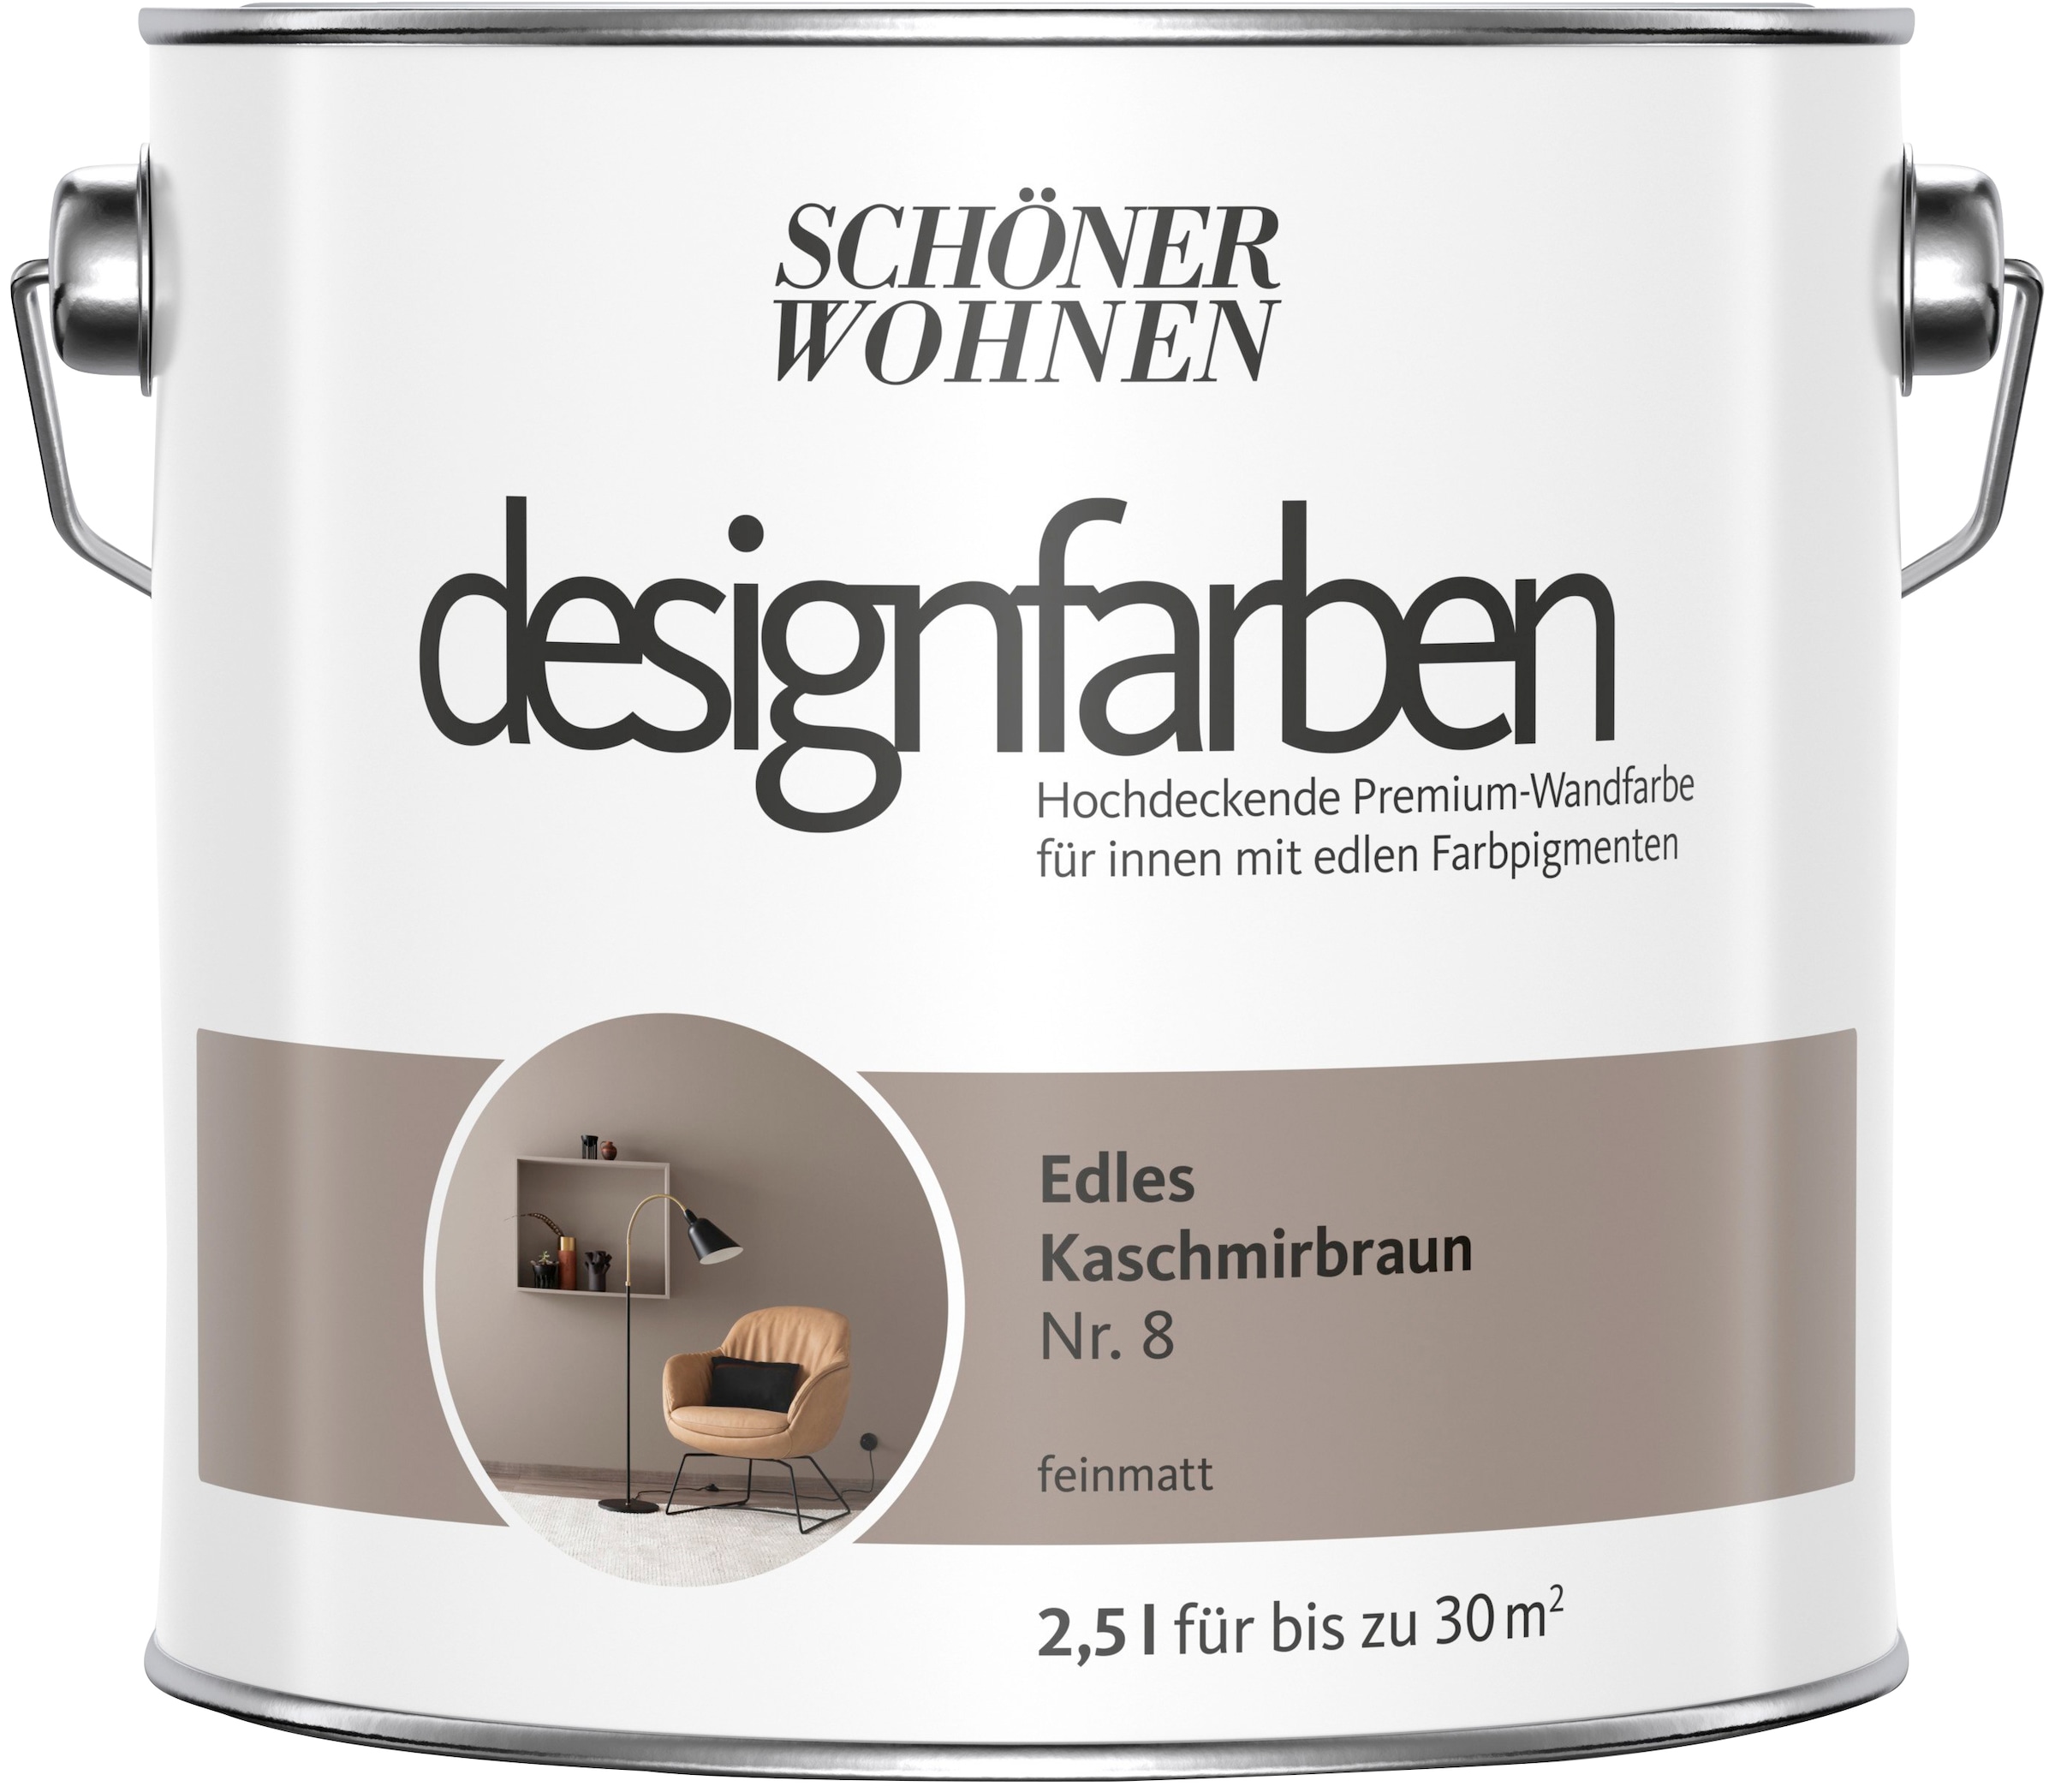 SCHÖNER WOHNEN FARBE Wand- und Deckenfarbe »designfarben«, 2,5 Liter, Edles Kaschmirbraun Nr. 8, hochdeckende Premium-Wandfarbe